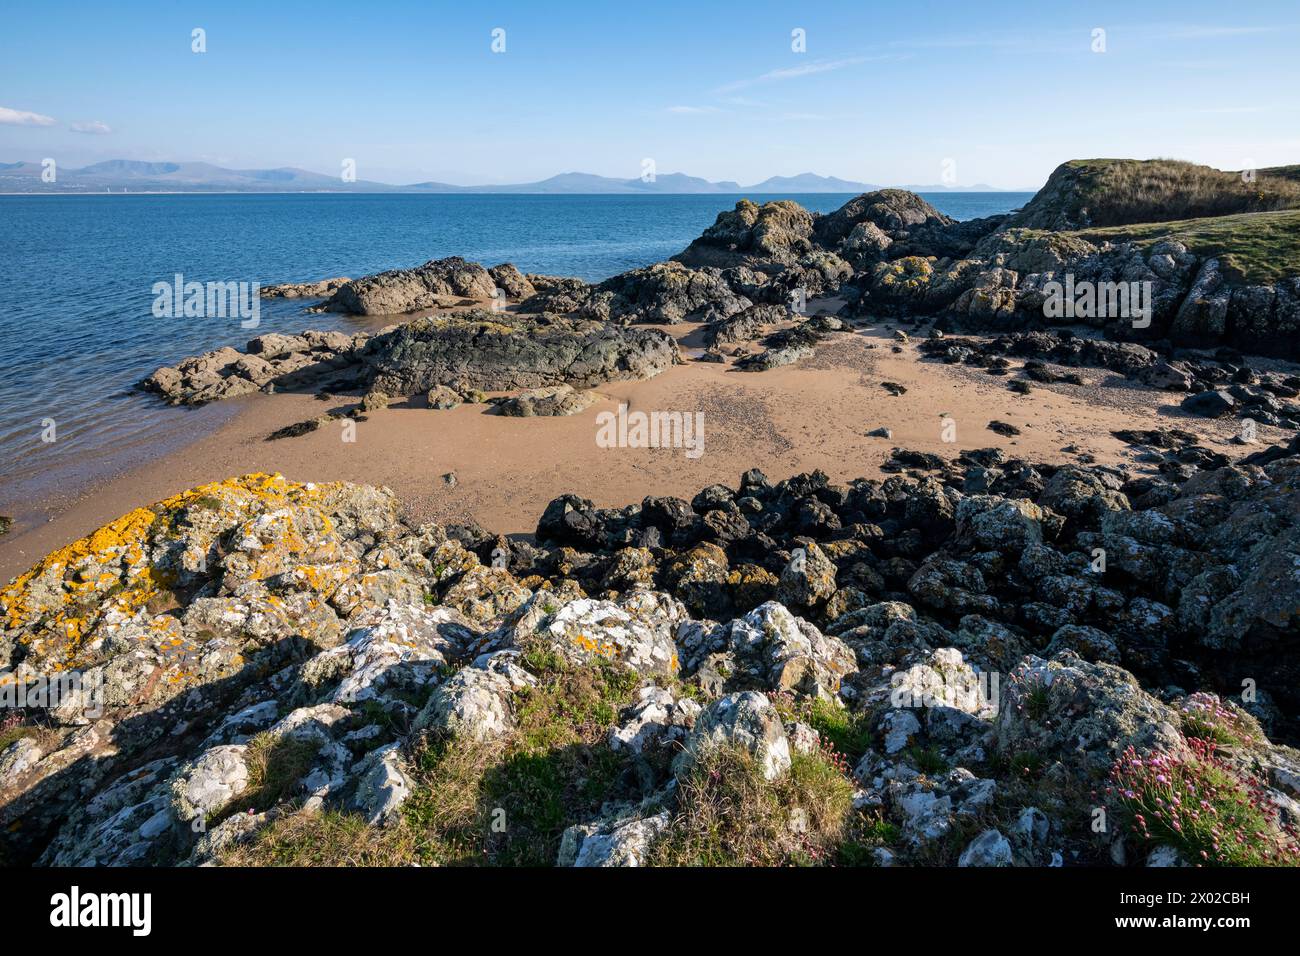 Wunderschöne Aussicht von Llanddwyn Island auf Anglesey mit den Bergen des walisischen Festlandes am Horizont. Stockfoto